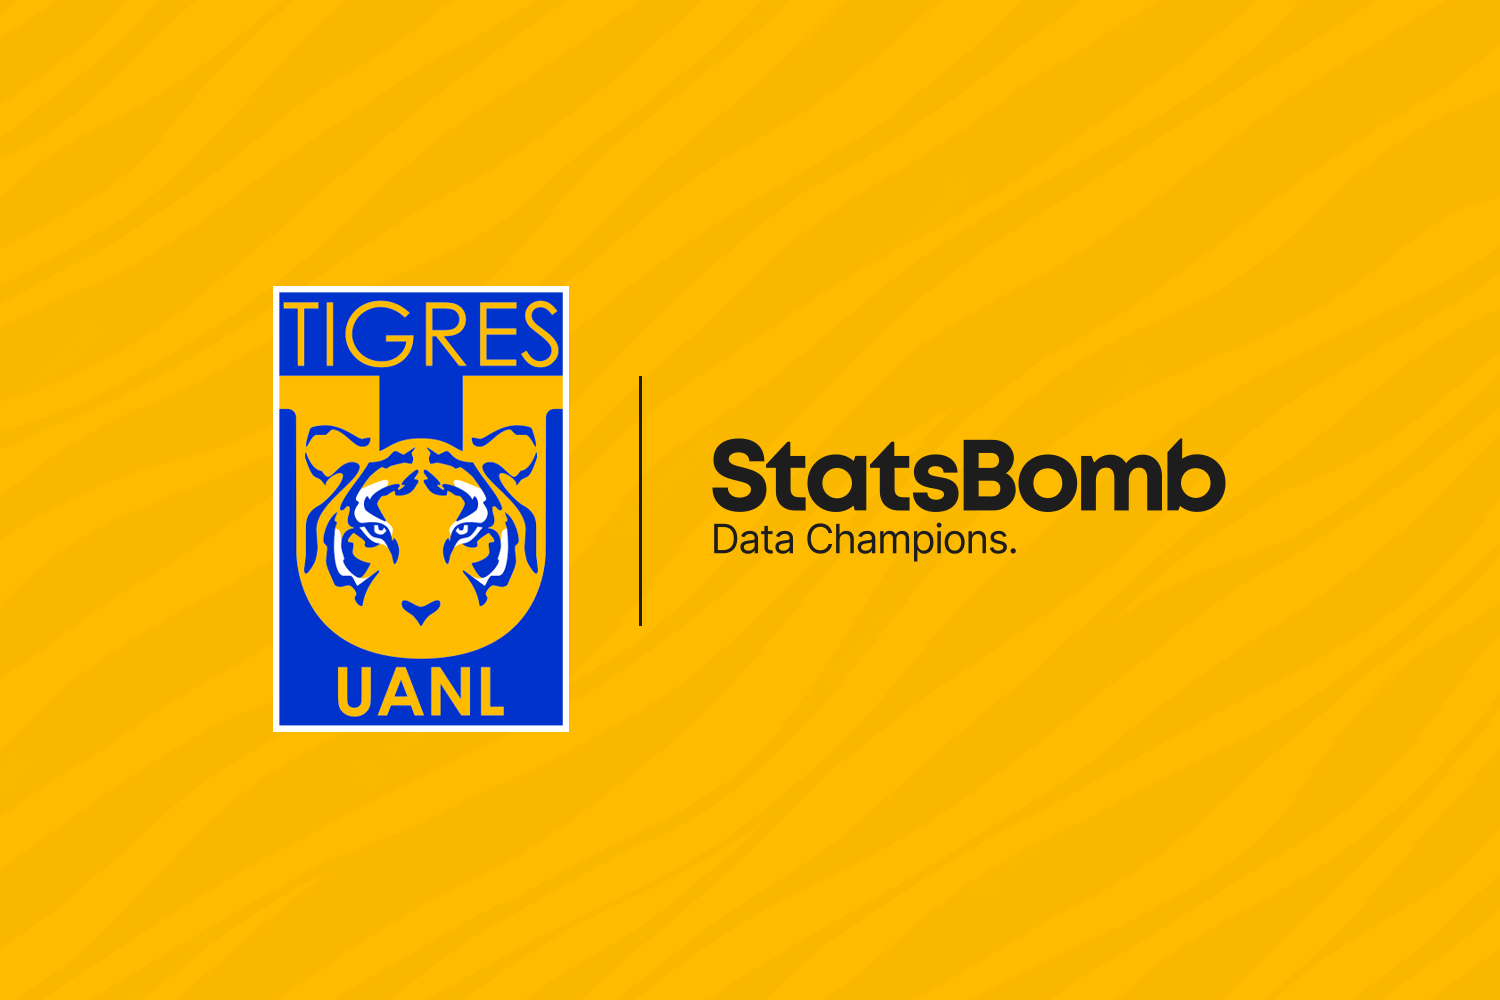 StatsBomb firma un acuerdo con Tigres